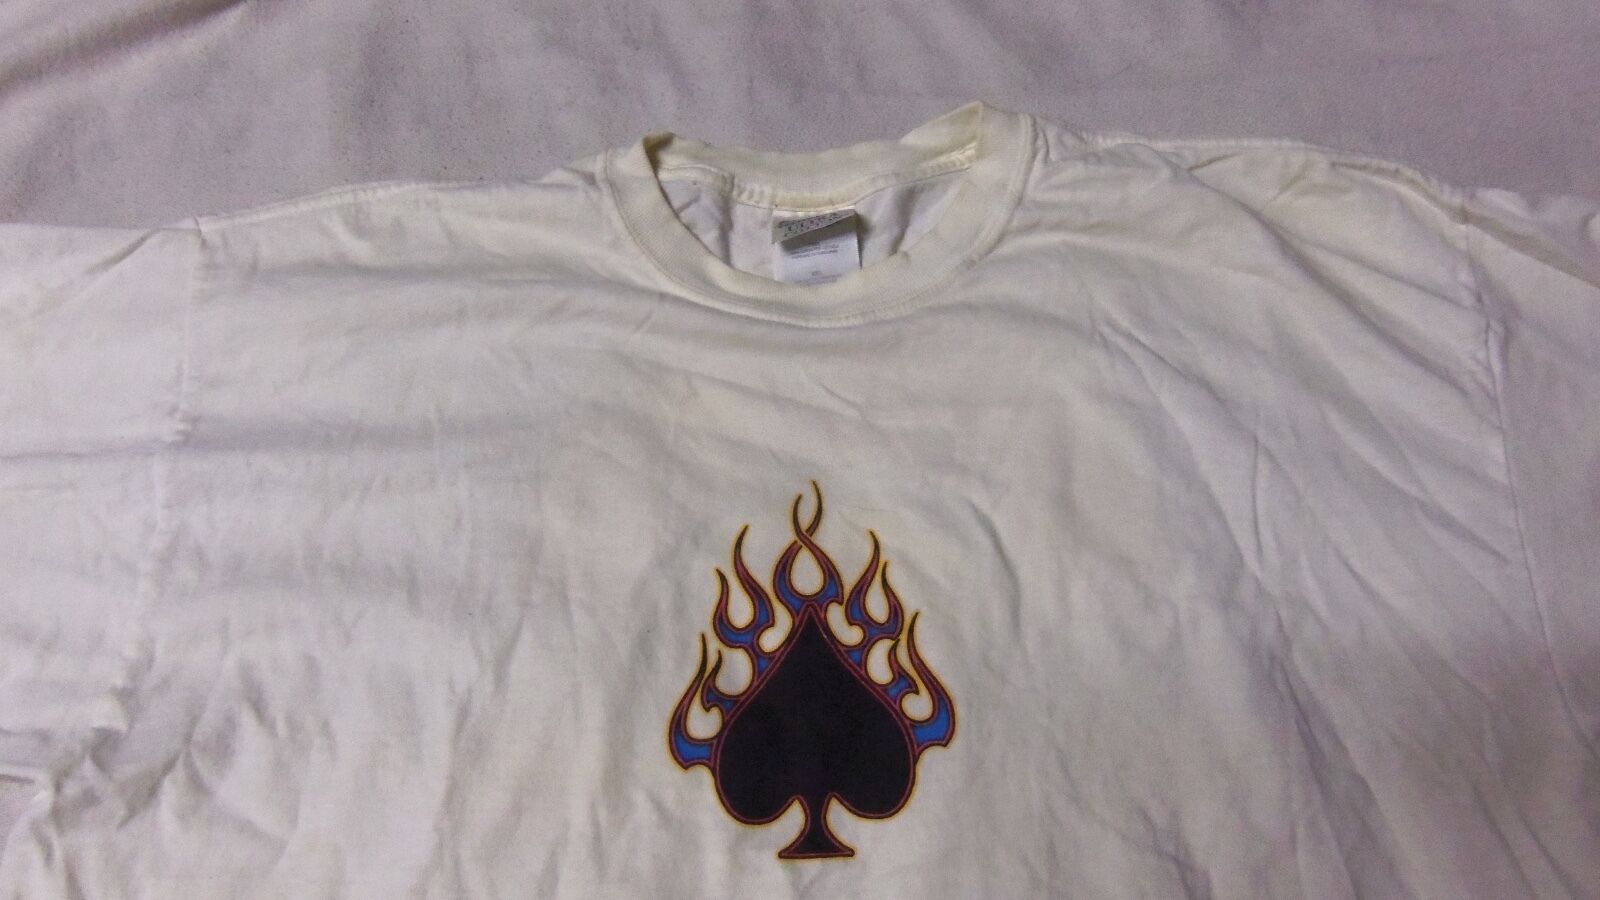 2004 BIKE WEEK DAYTONA BEACH Shirt 2XL 